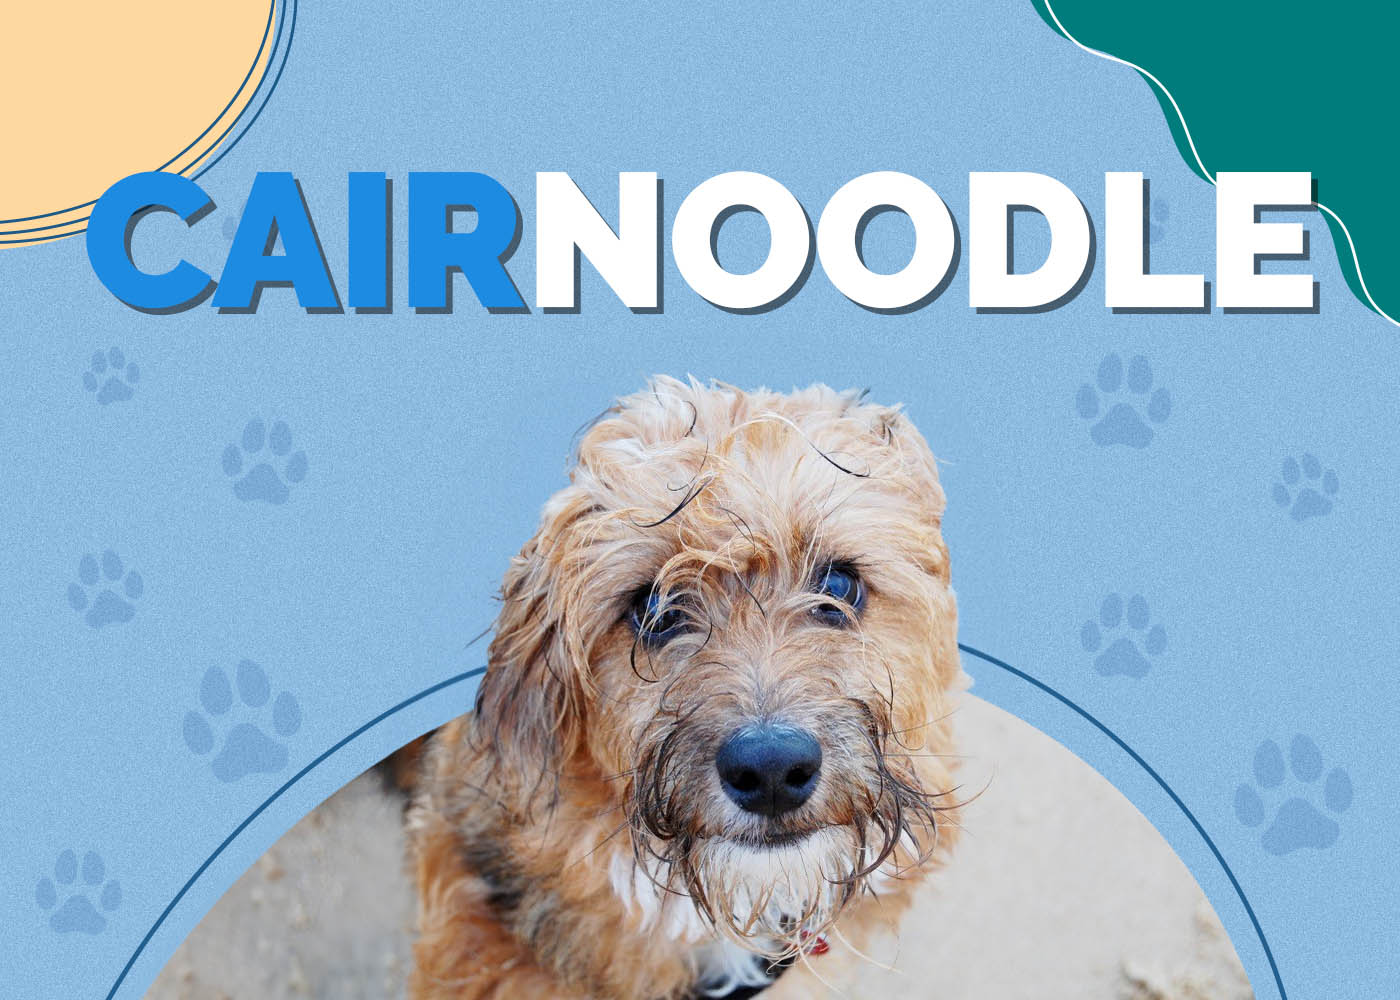 Cairnoodle (Cairn Terrier & Miniature Poodle Mix)